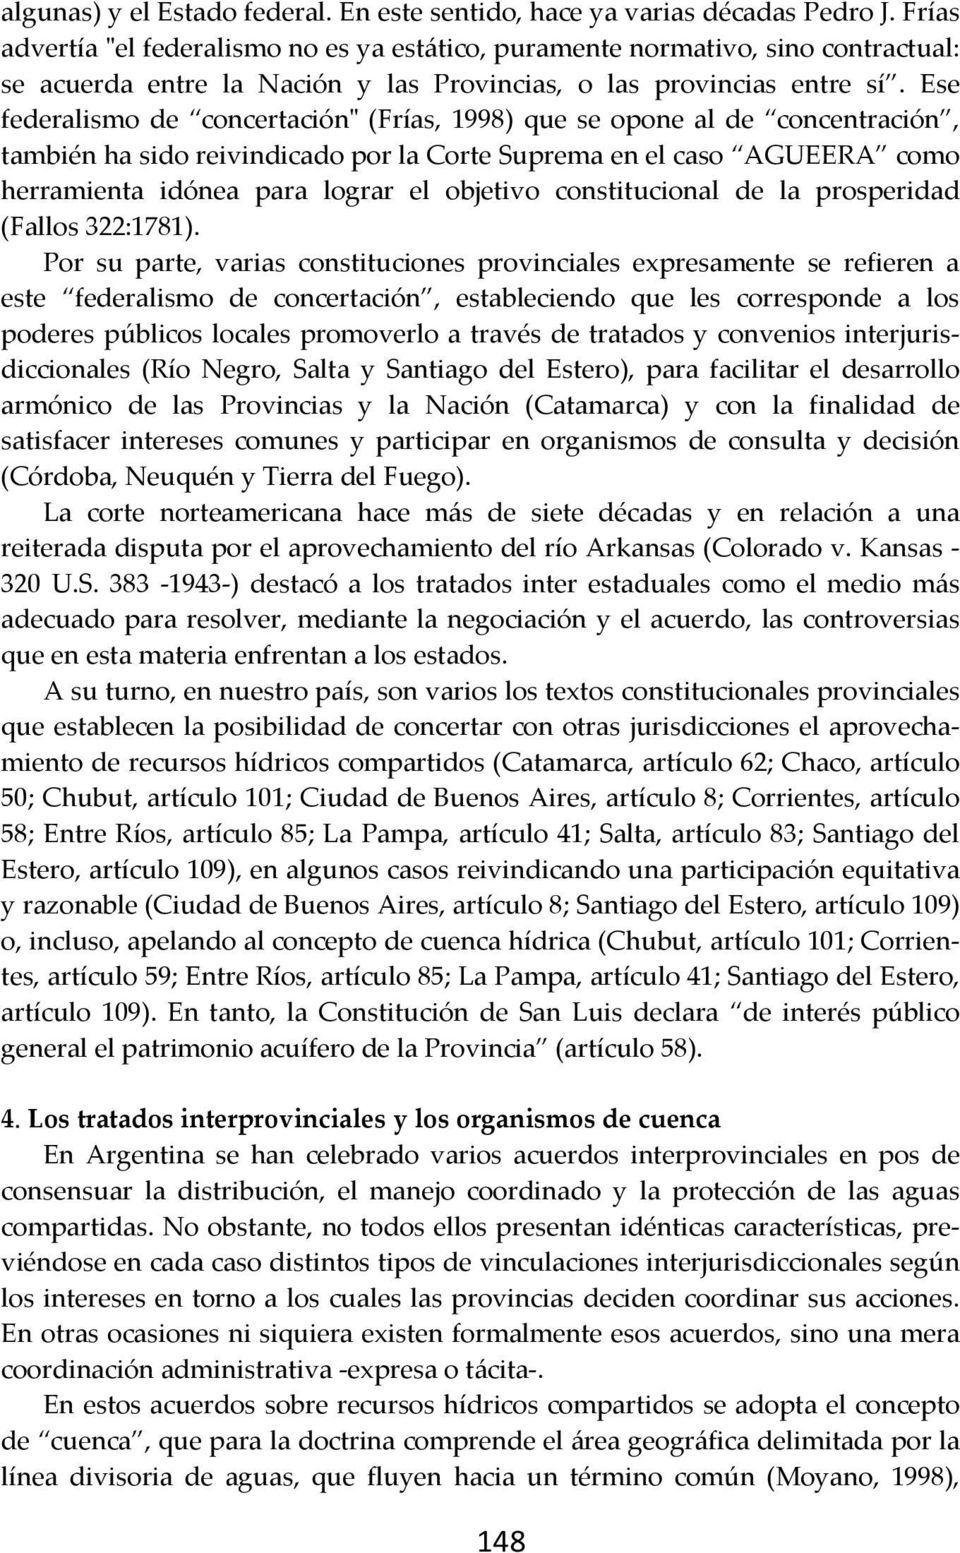 Ese federalismo de concertación" (Frías, 1998) que se opone al de concentración, también ha sido reivindicado por la Corte Suprema en el caso AGUEERA como herramienta idónea para lograr el objetivo